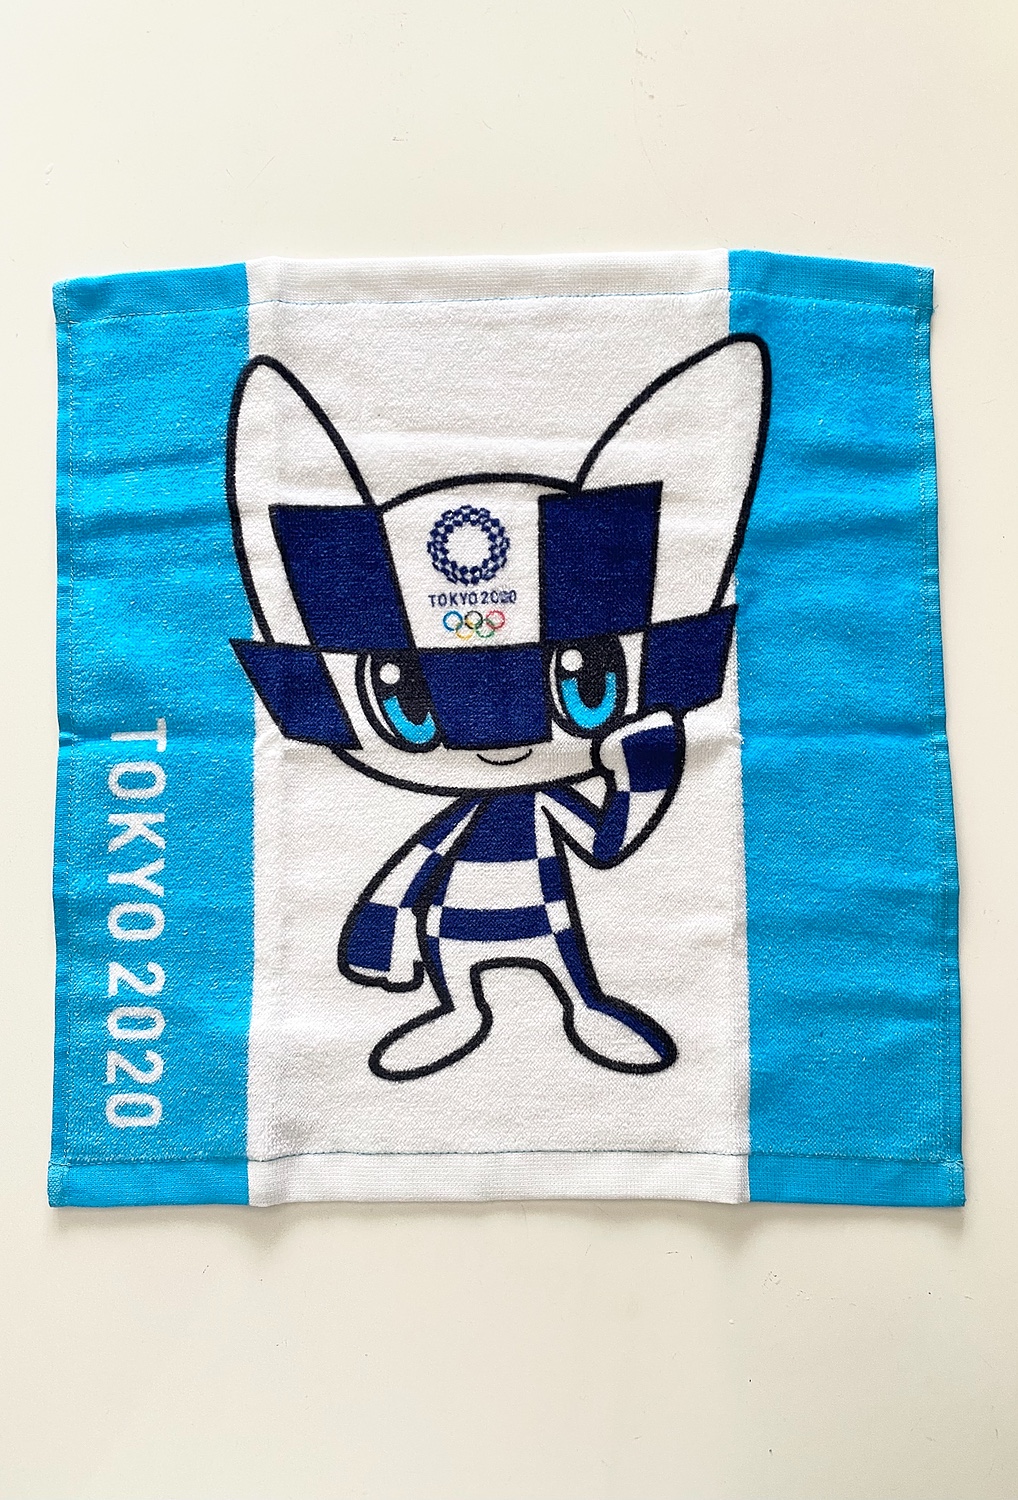 期間限定今なら送料無料 新品 TOKYO 2020 東京五輪 オリンピック エコ水筒 冷汗タオル